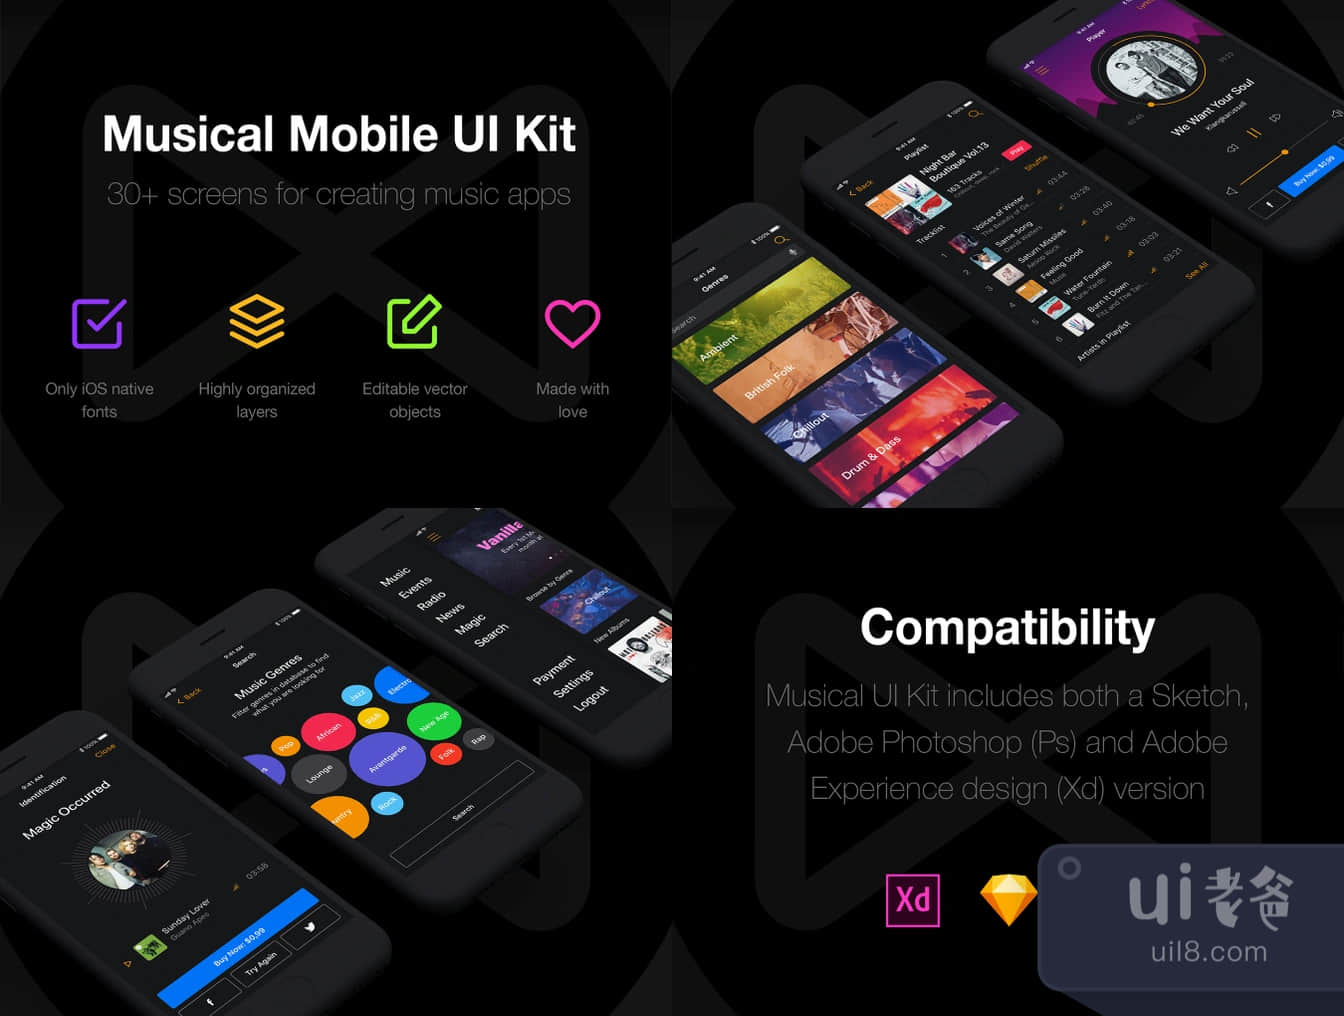 音乐手机UI包 (Musical Mobile UI Kit)插图